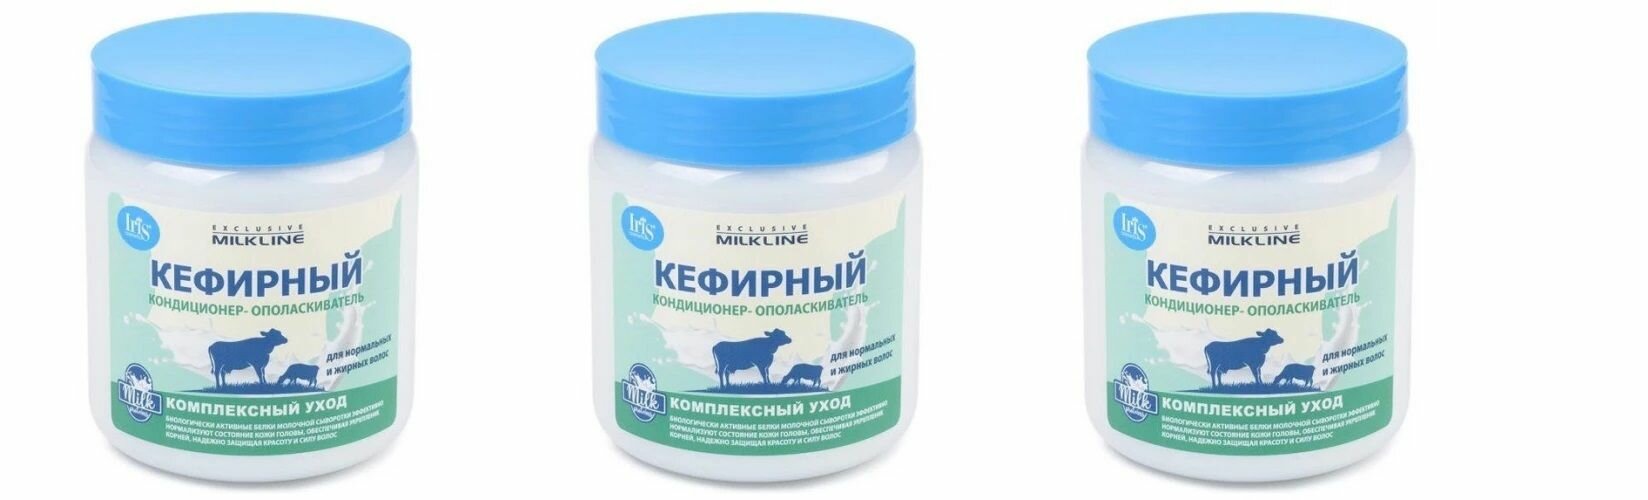 Кондиционер-ополаскиватель для волос Кефирный серии Exclusive Milk Line, 500 мл х 3шт